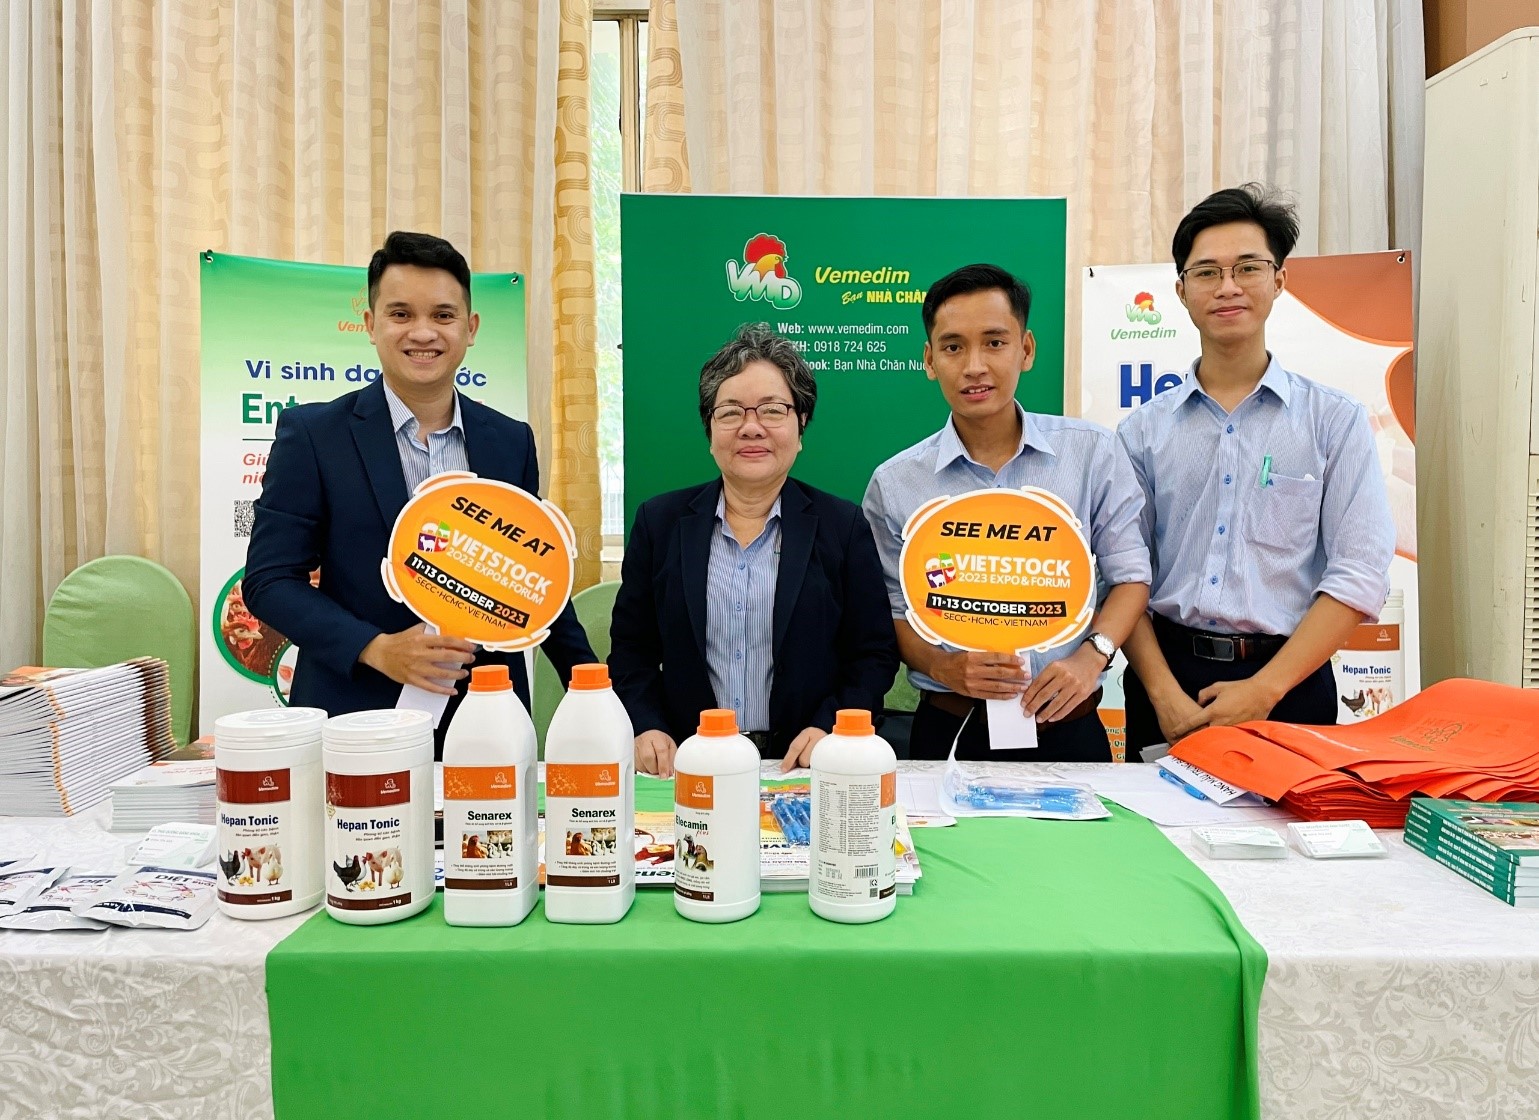 Tại hội thảo chăn nuôi gà đẻ trứng tại Mỹ Tho, 3 doanh nghiệp VEMEDIM, PROFARM và Đông Á đã mang đến trưng bày nhiều sản phẩm tiêu biểu